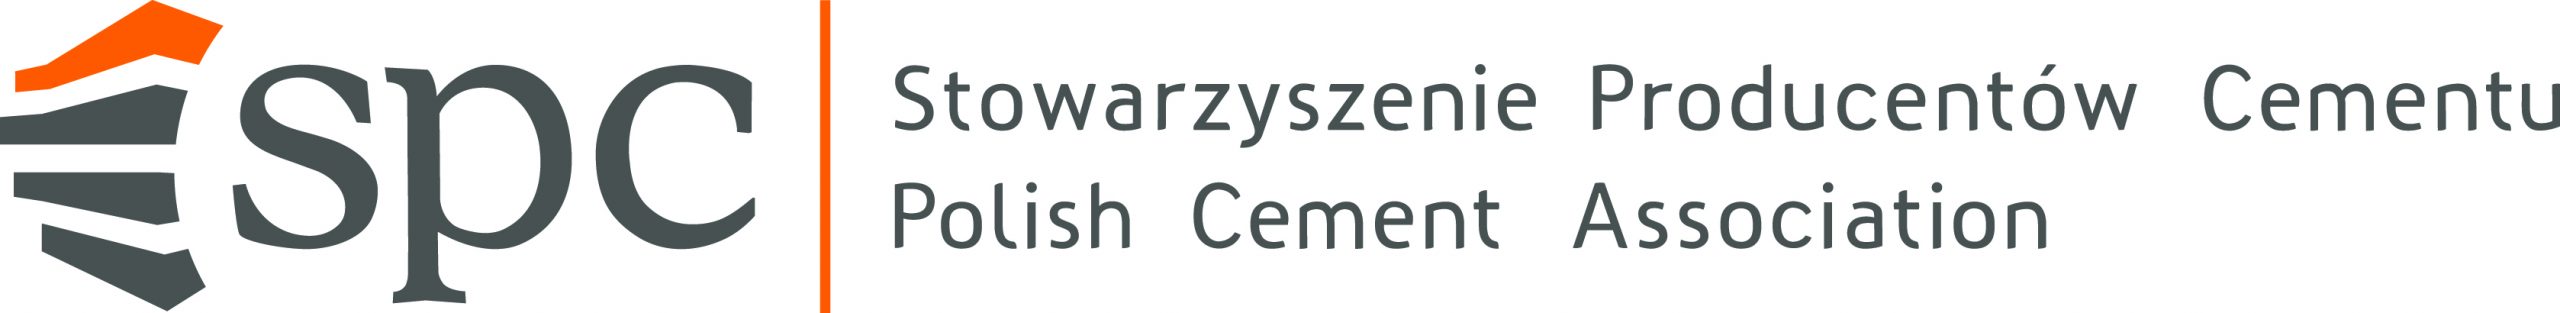 Stowarzyszenie Producentów Cementu